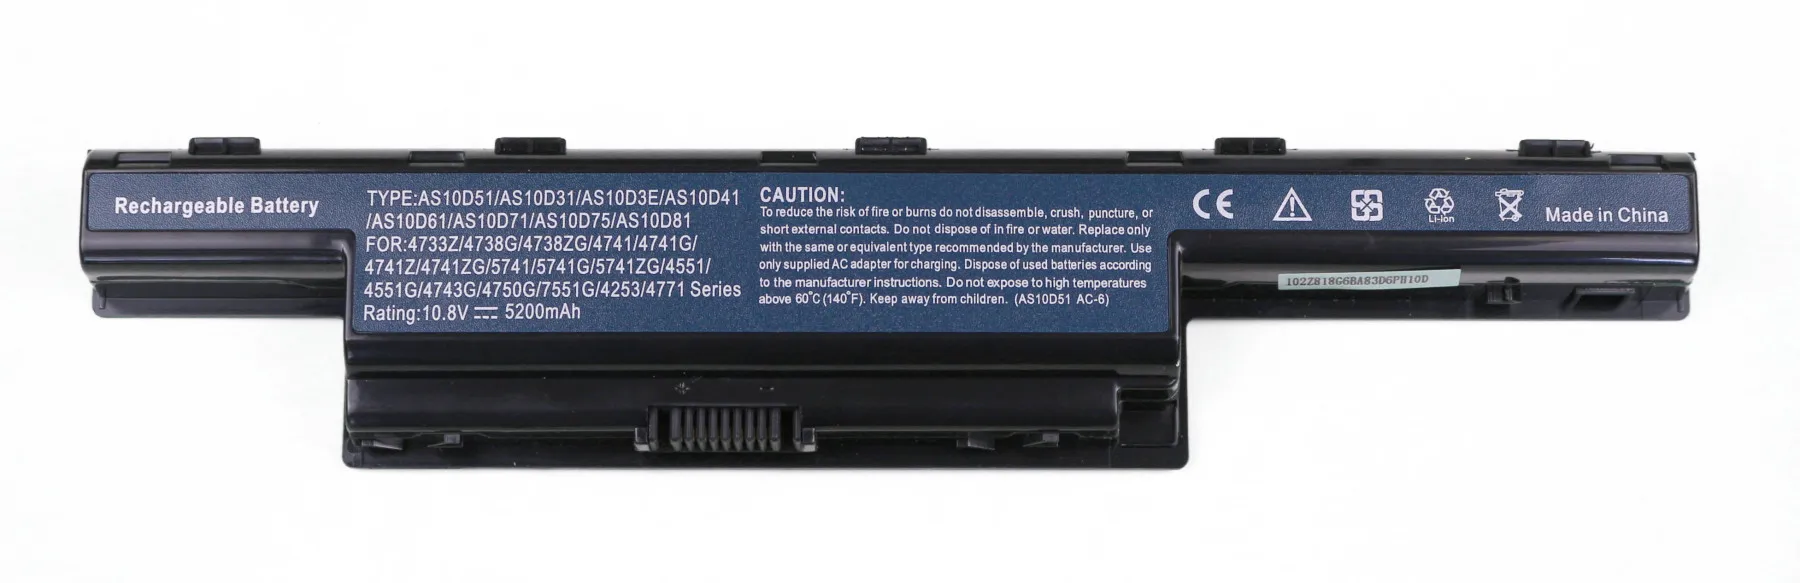 Аккумулятор для ноутбука Acer Aspire 5742G 384G50Mikk (батарея)|Аккумуляторы ноутбуков| |